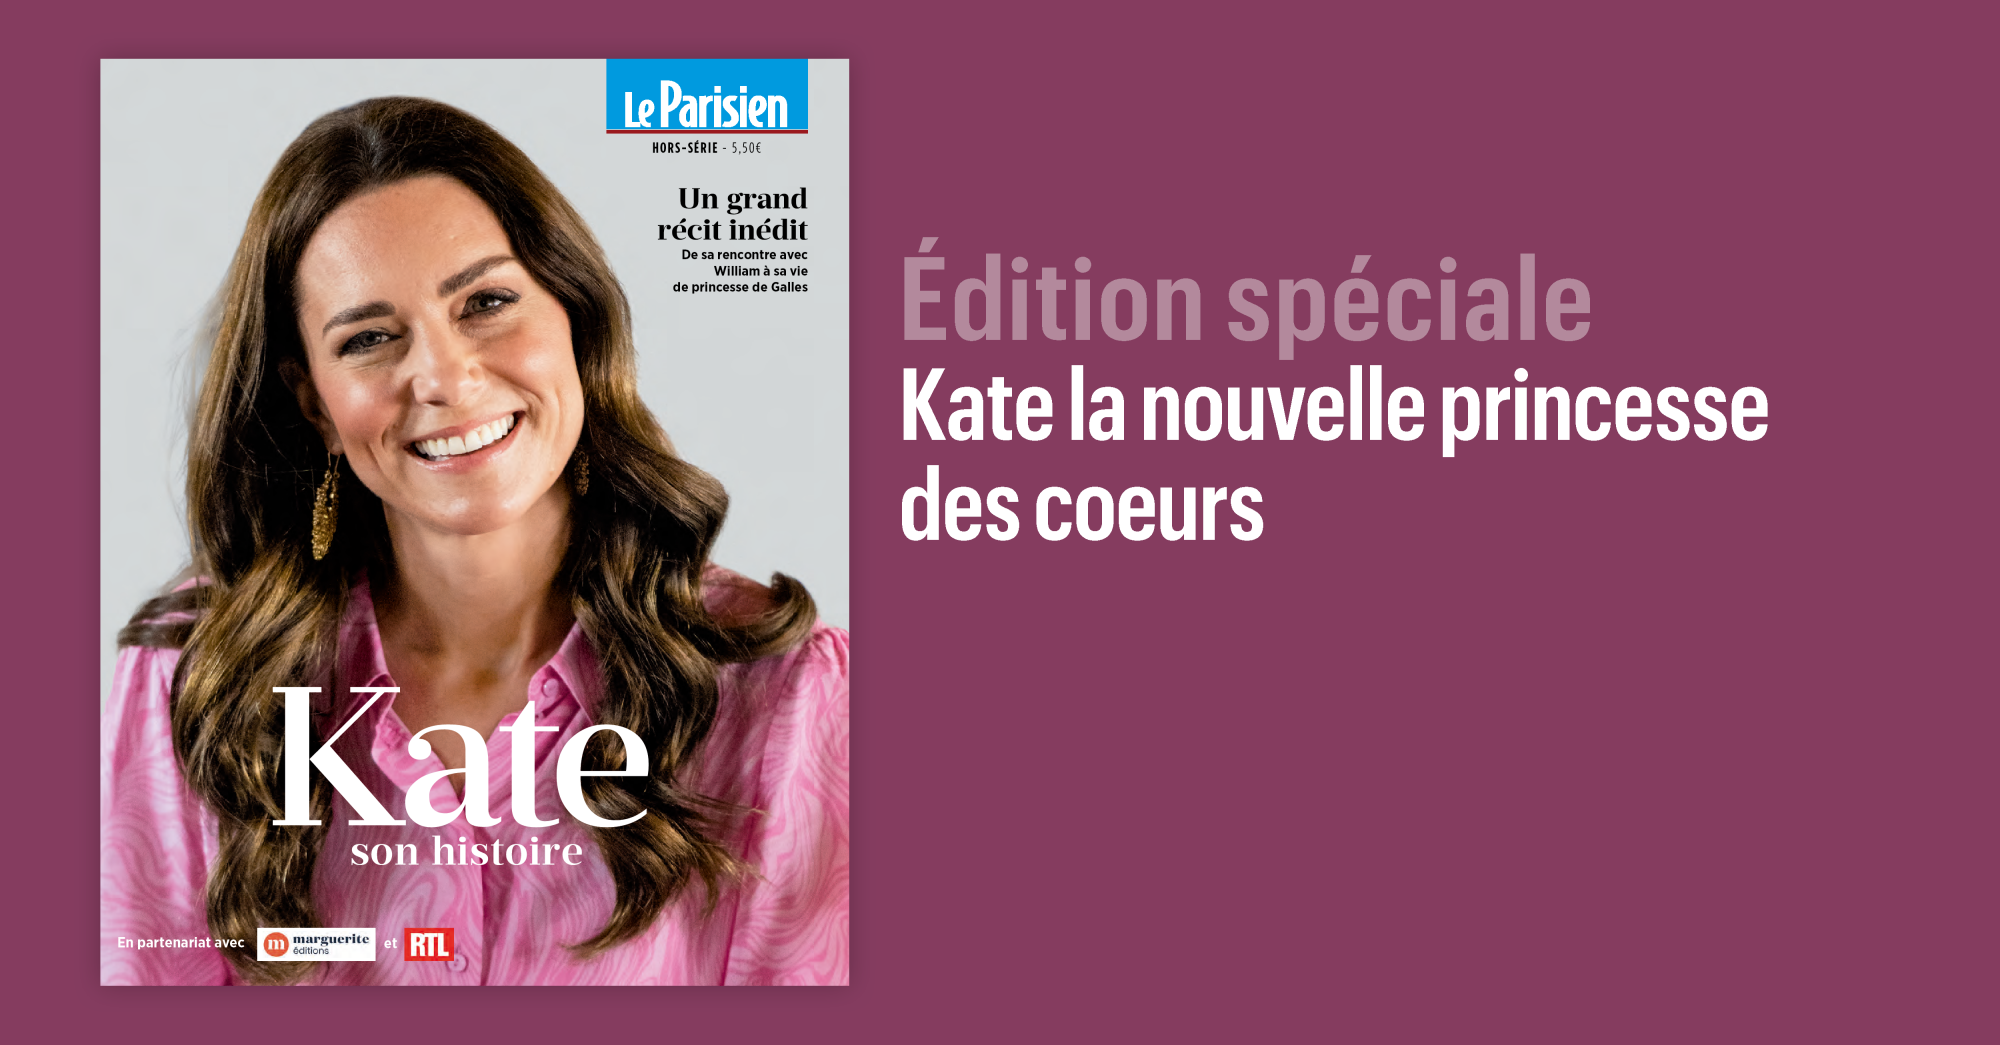 Mercredi 26 juin : Le Parisien publie un nouvel hors-série : Kate son histoire